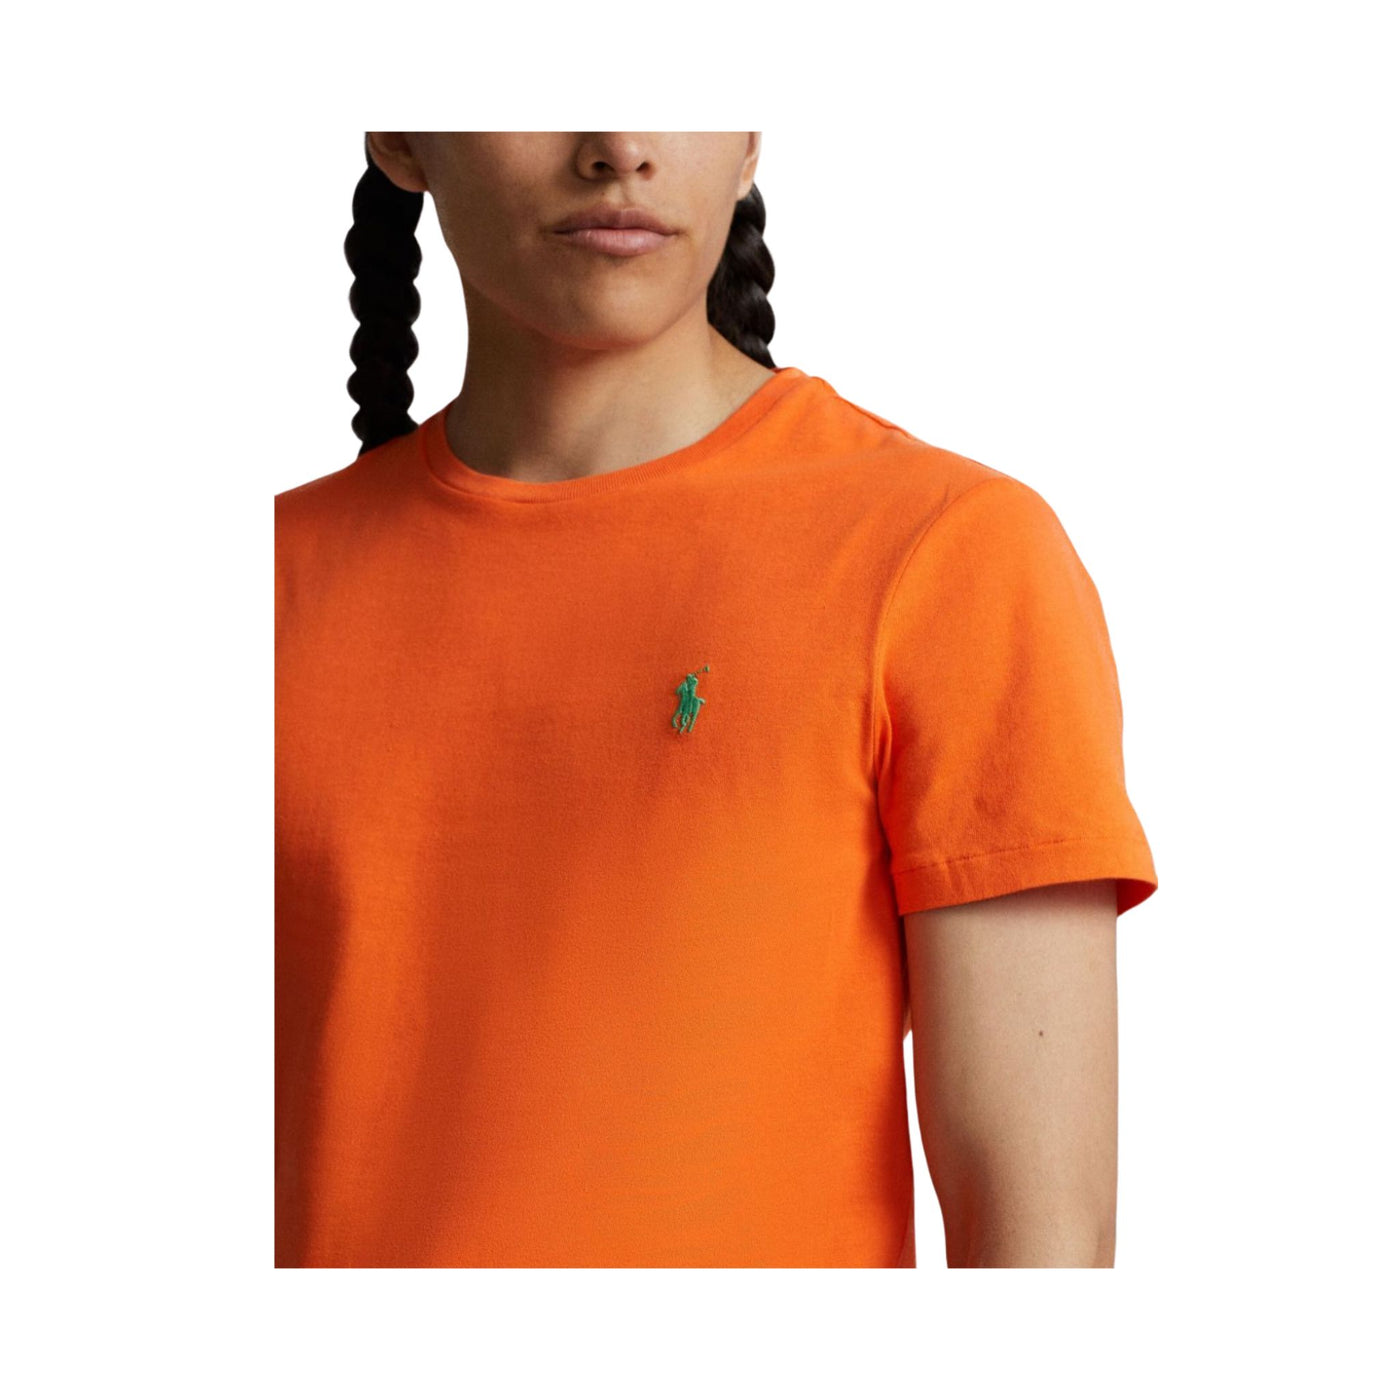 Dettaglio ravvicinato T-shirt in tinta unita arancione con cavallino sul petto in contrasto